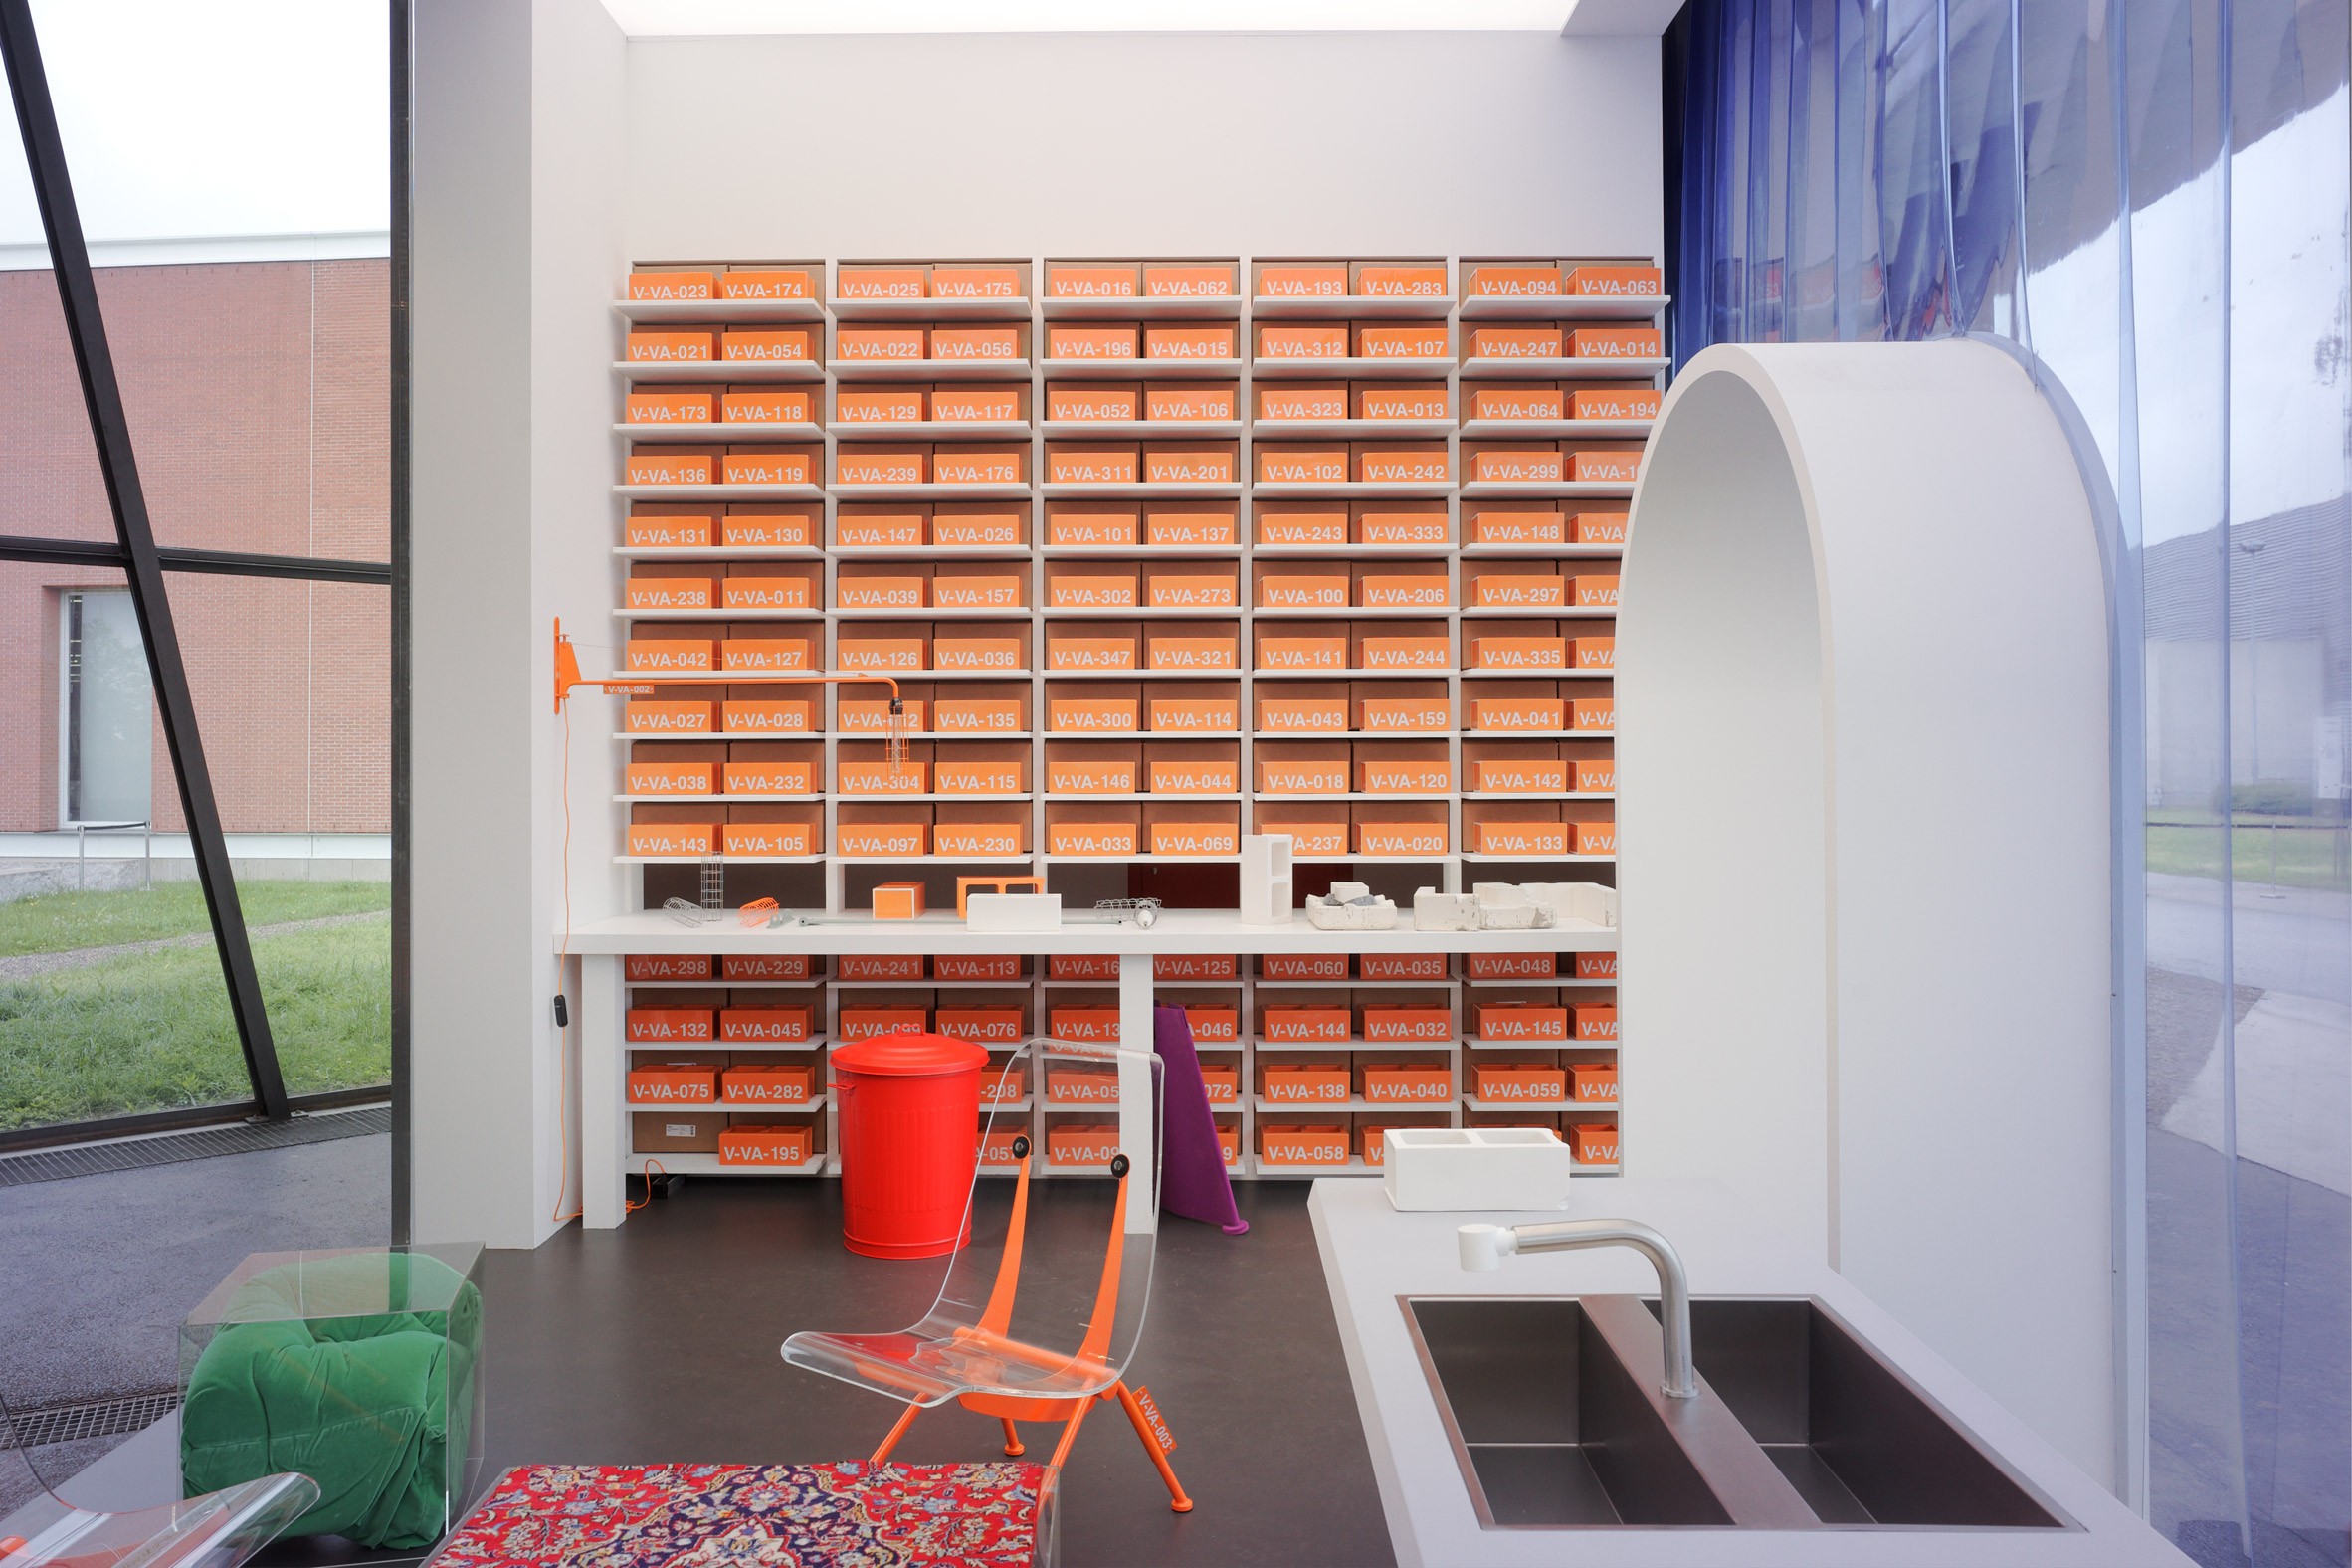 Virgil Abloh cria casa do futuro em instalação que reinventa clássicos do design (Foto: Reprodução)